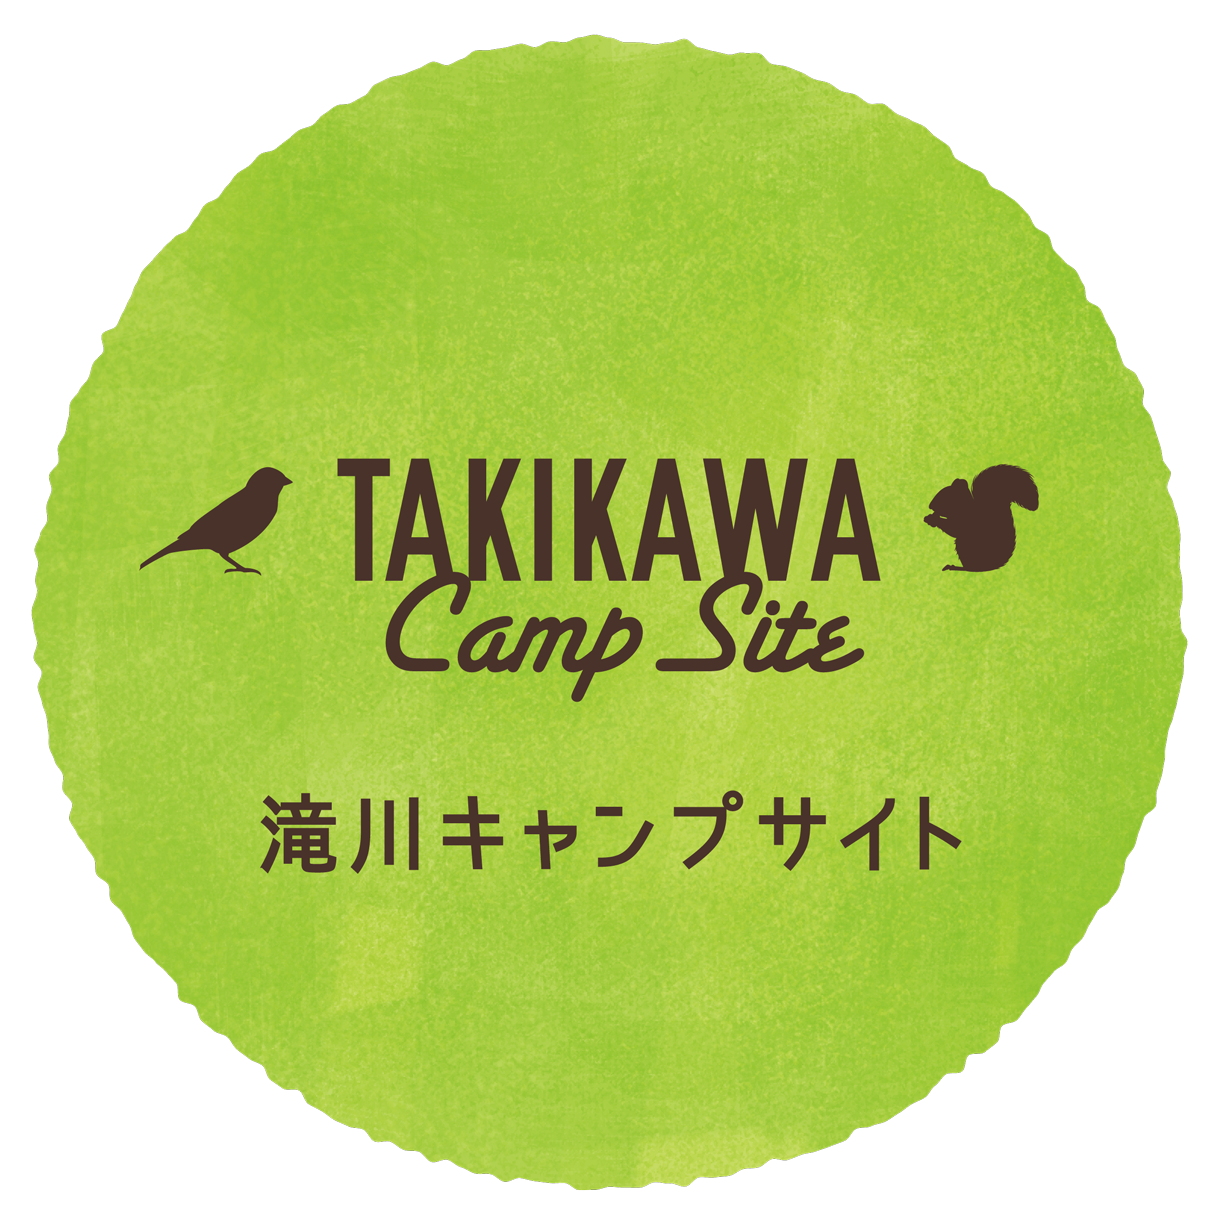 TAKIKAWA Camp Site 滝川キャンプサイト